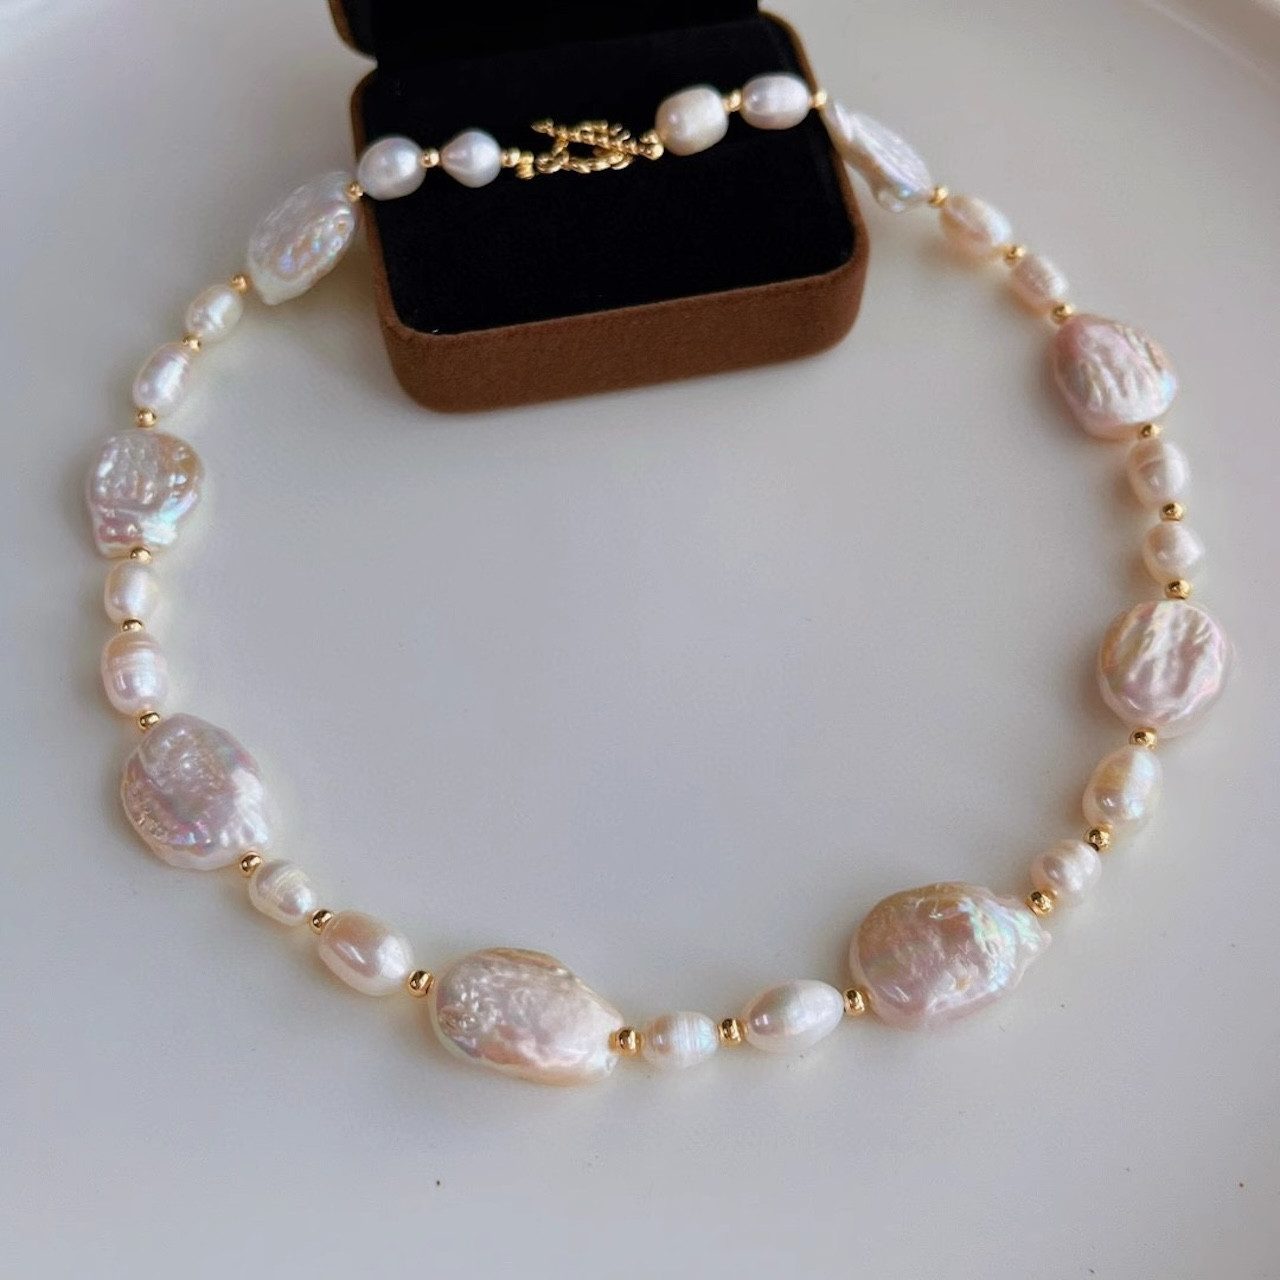 DTC GmbH Herzkette Natural Baroque Pearl Choker Necklace (Barocke Perlenkette, die Sie in den Barock verliebt machen wird, 1-tlg)